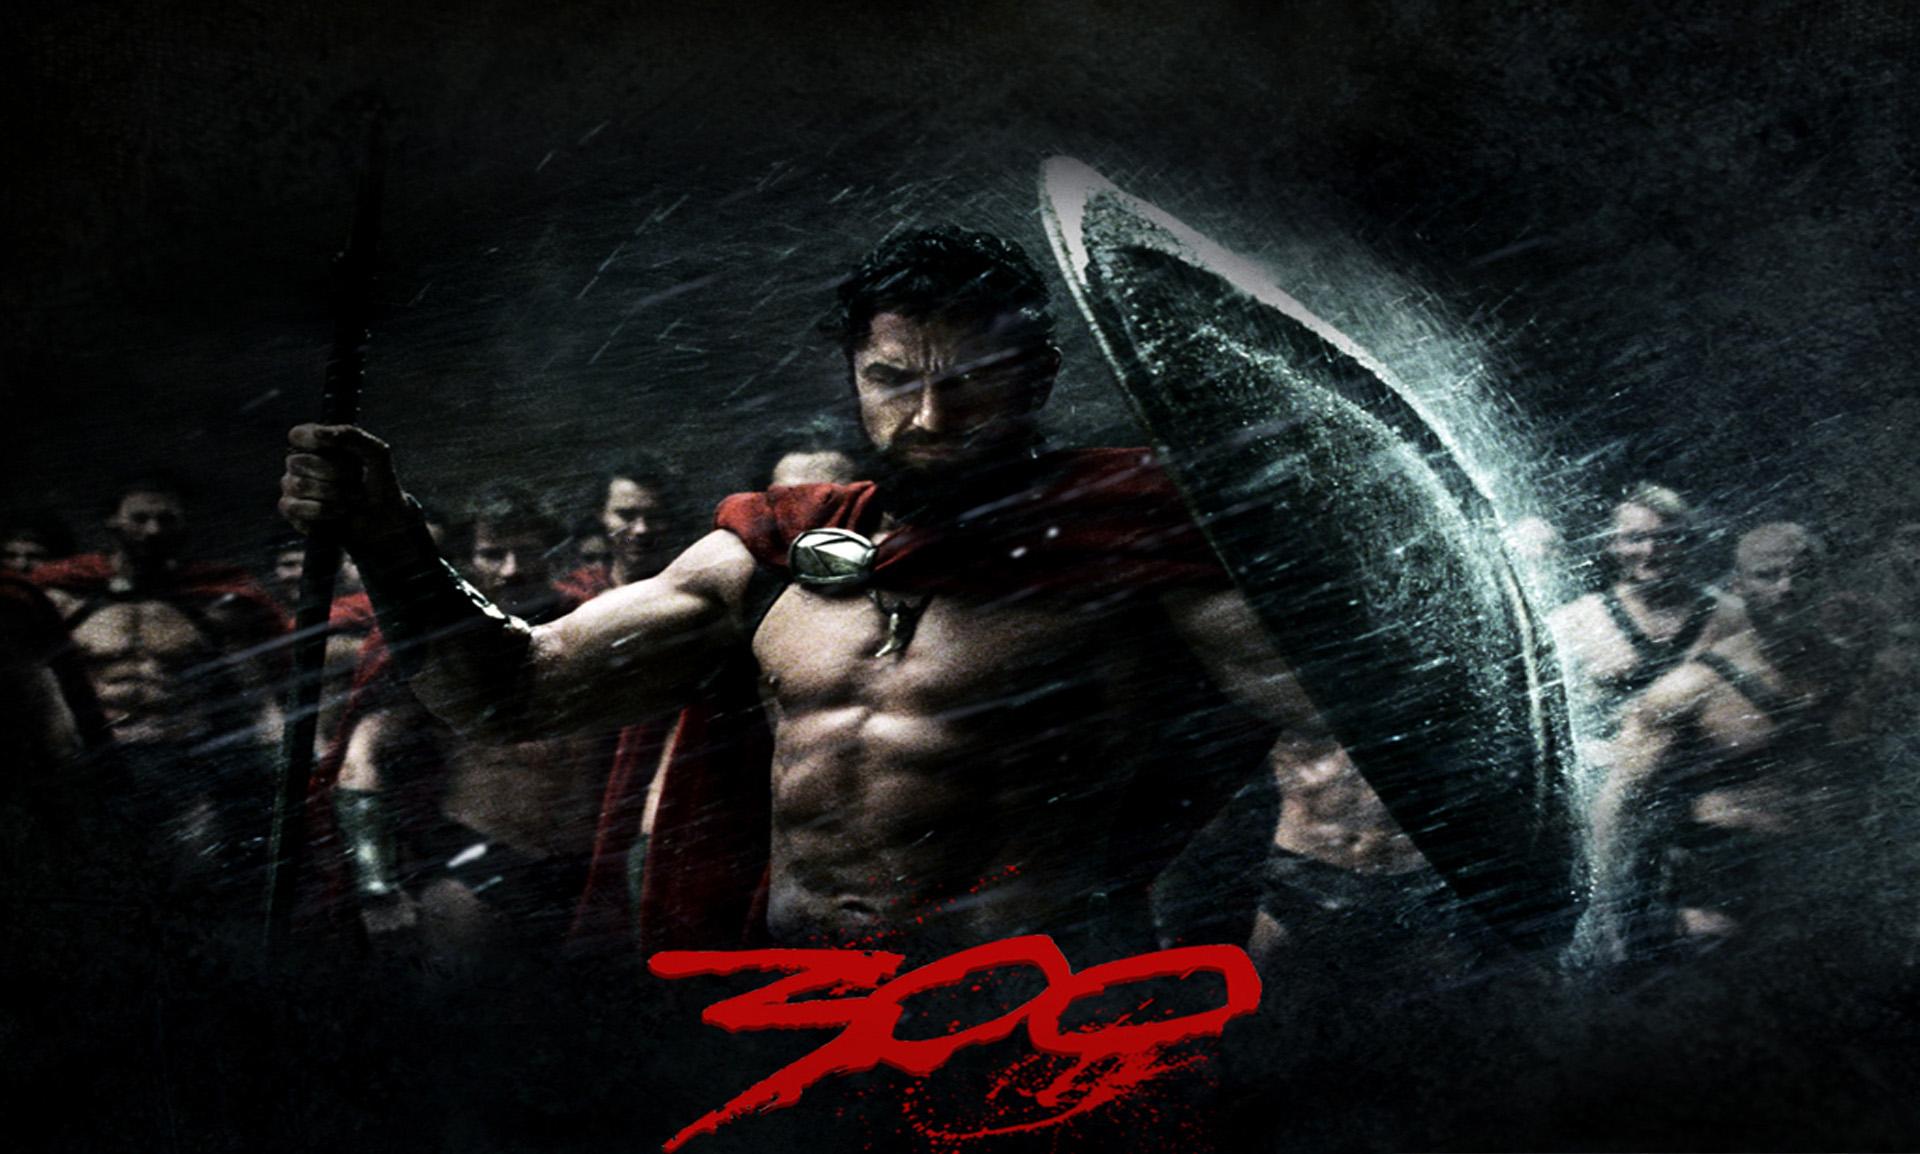 spartacus, movie, 300, 300 (movie), gerard butler, king leonidas, spartan, warrior